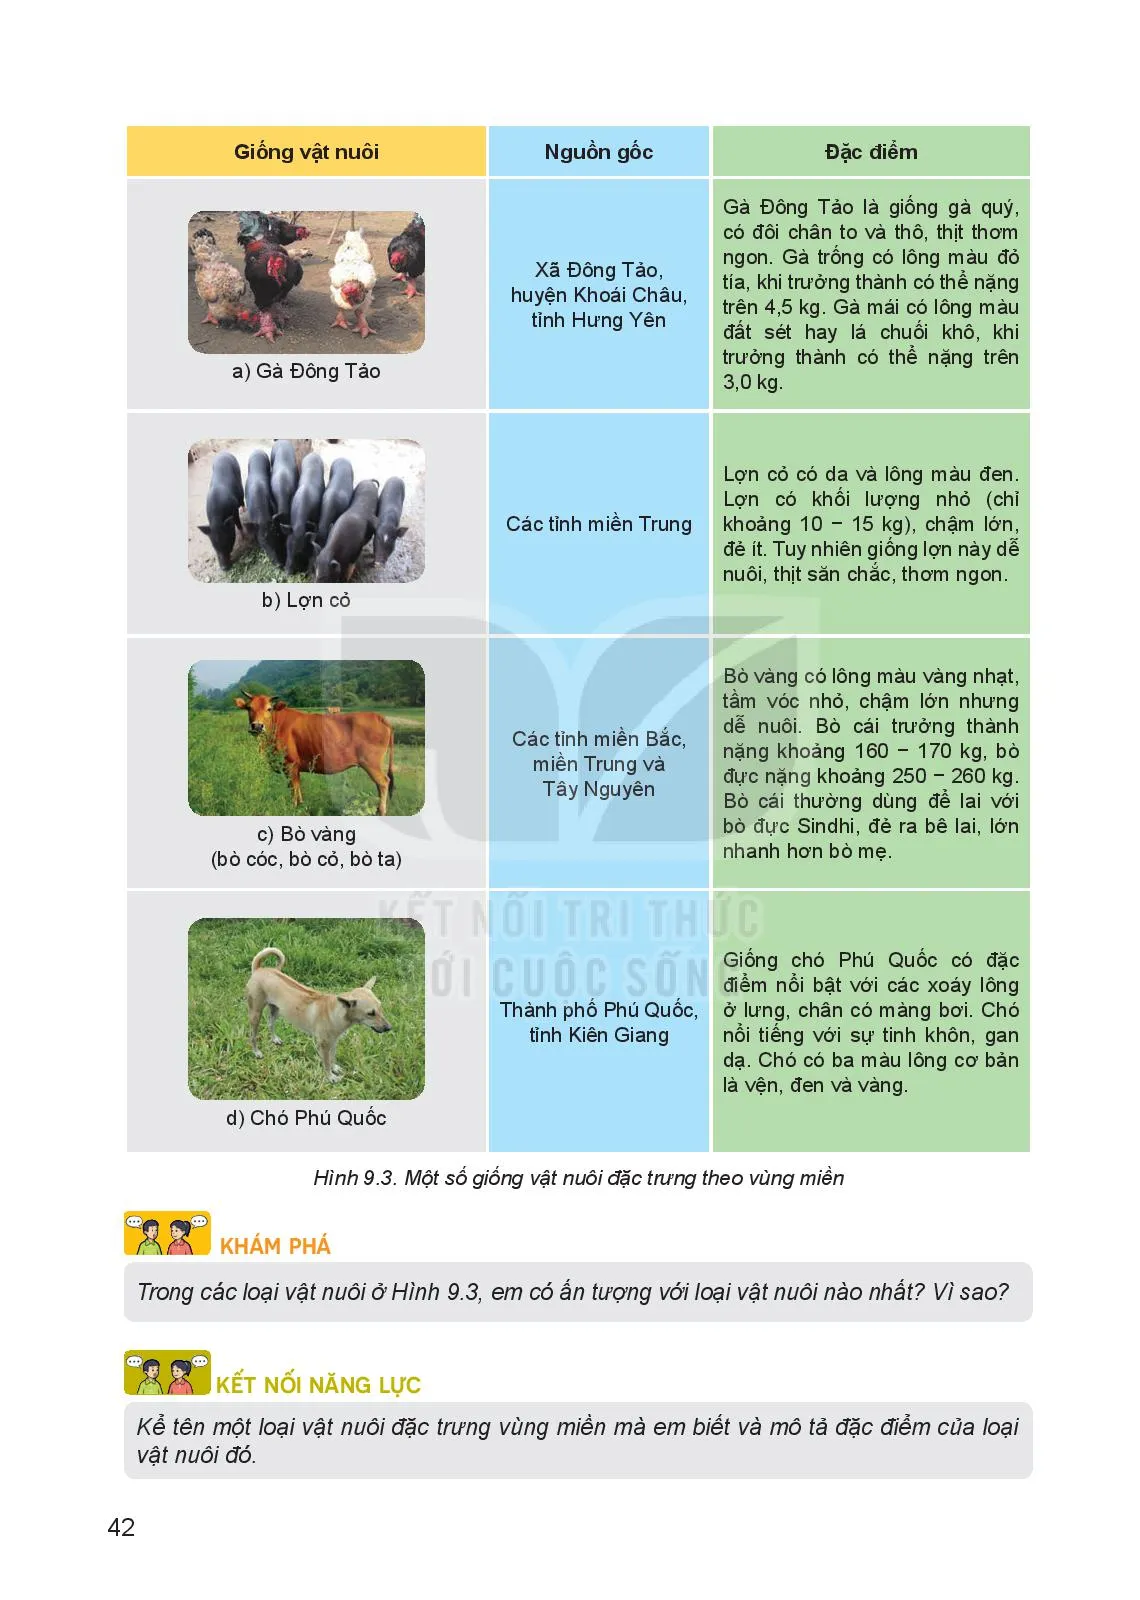 Bài 9. Giới thiệu về chăn nuôi